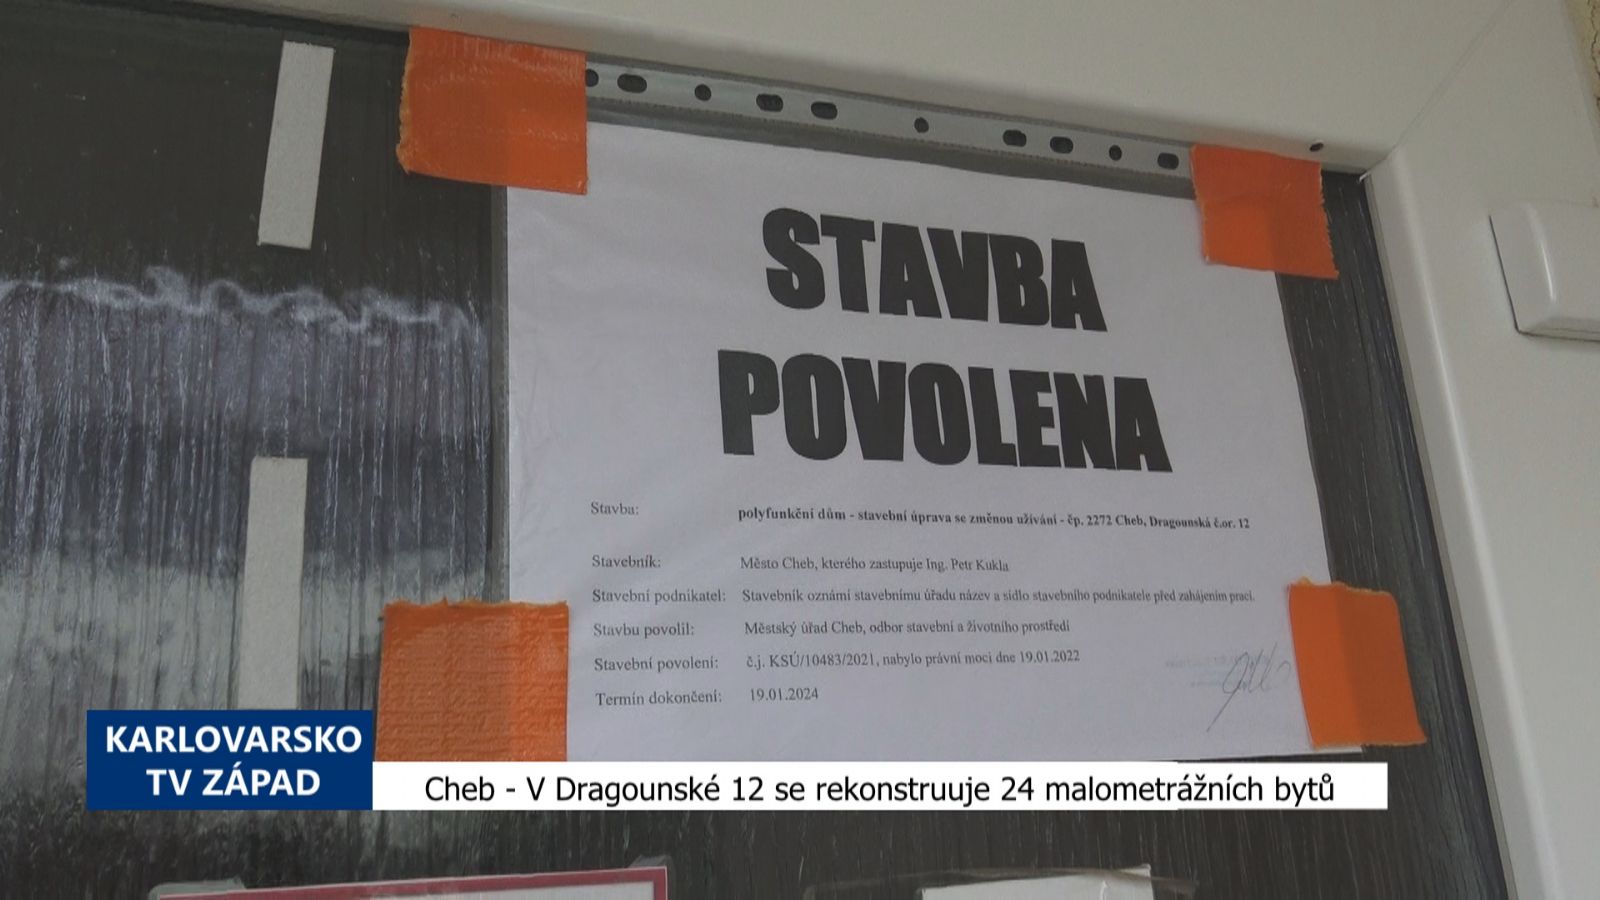 Cheb: V Dragounské 12 se rekonstruuje 24 malometrážních bytů (TV Západ)